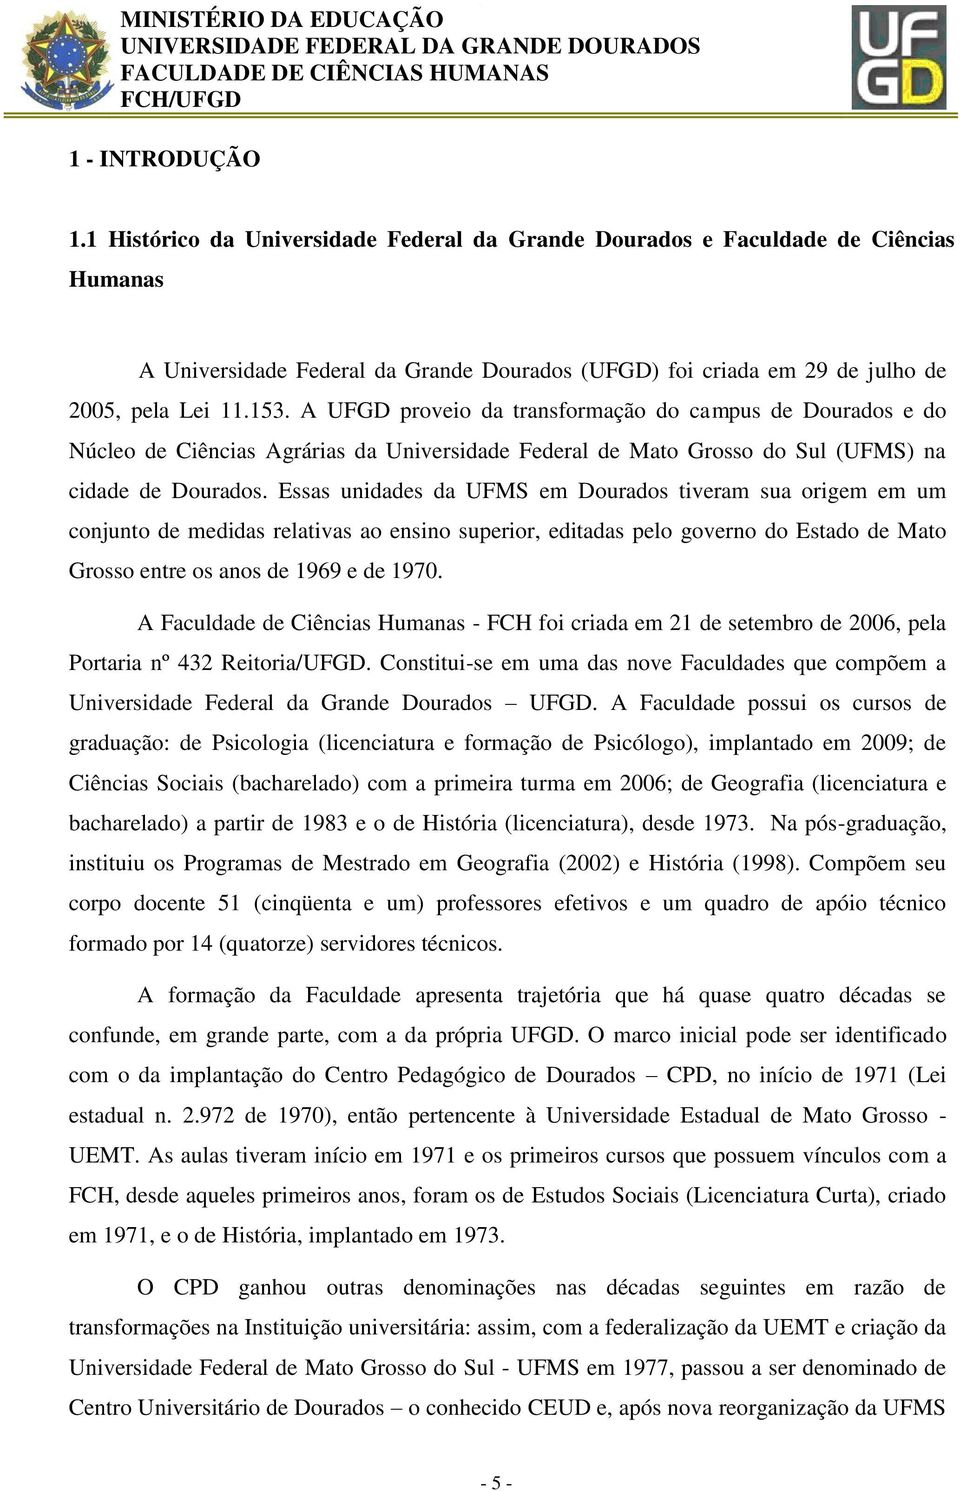 Essas unidades da UFMS em Dourados tiveram sua origem em um conjunto de medidas relativas ao ensino superior, editadas pelo governo do Estado de Mato Grosso entre os anos de 1969 e de 1970.